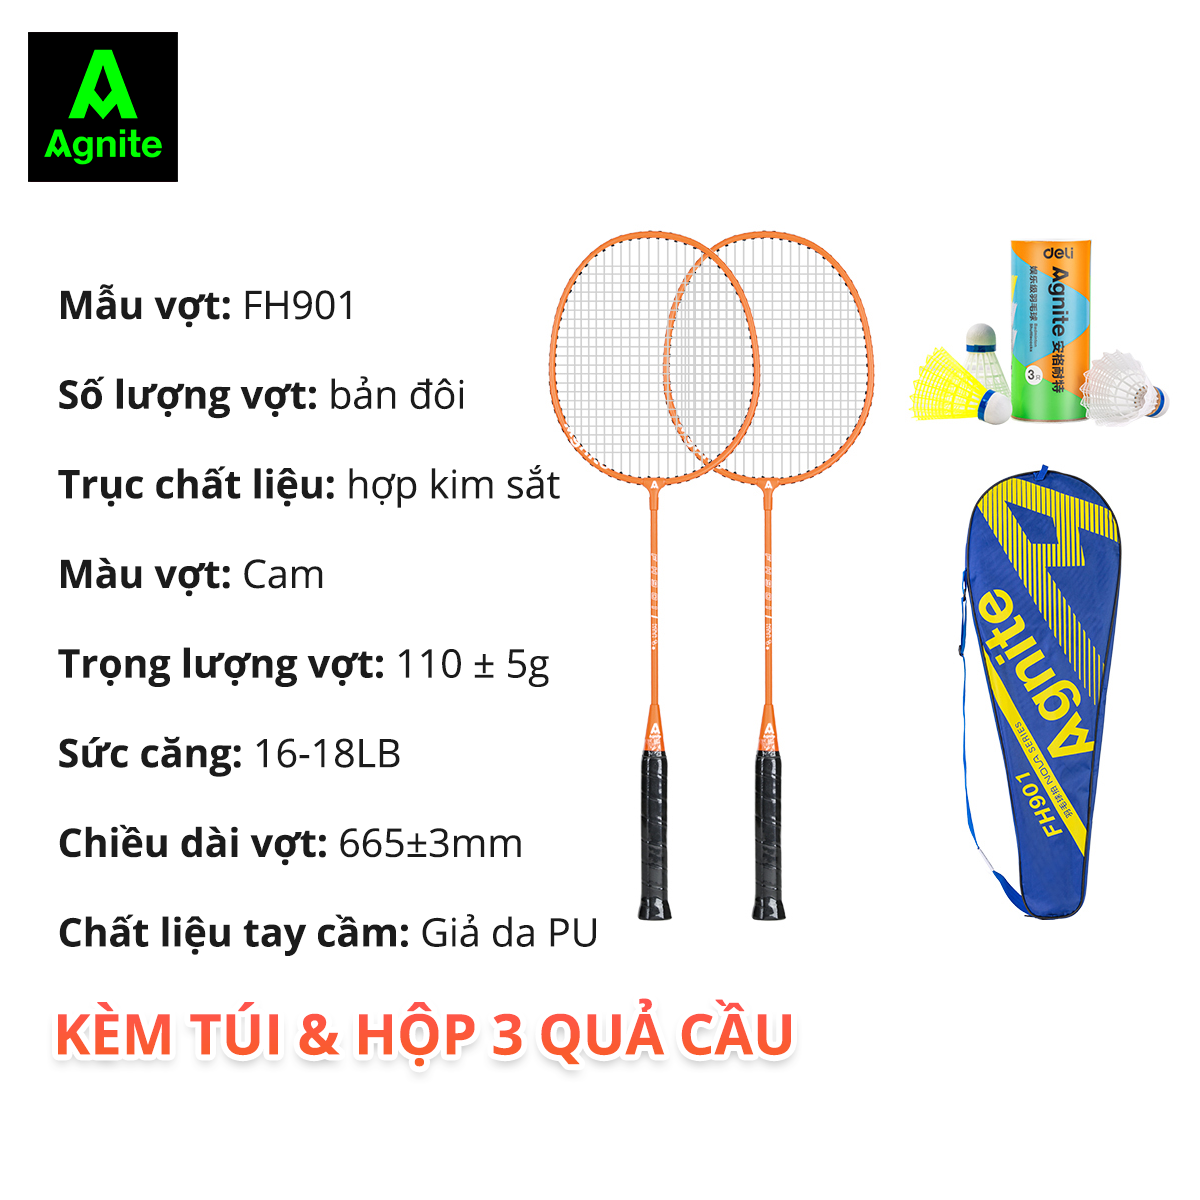 [TẶNG QUÀ] Bộ 2 vợt cầu lông thế hệ mới Agnite, siêu bền, nhẹ TẶNG kèm hộp cầu và túi đựng FH900/FH901